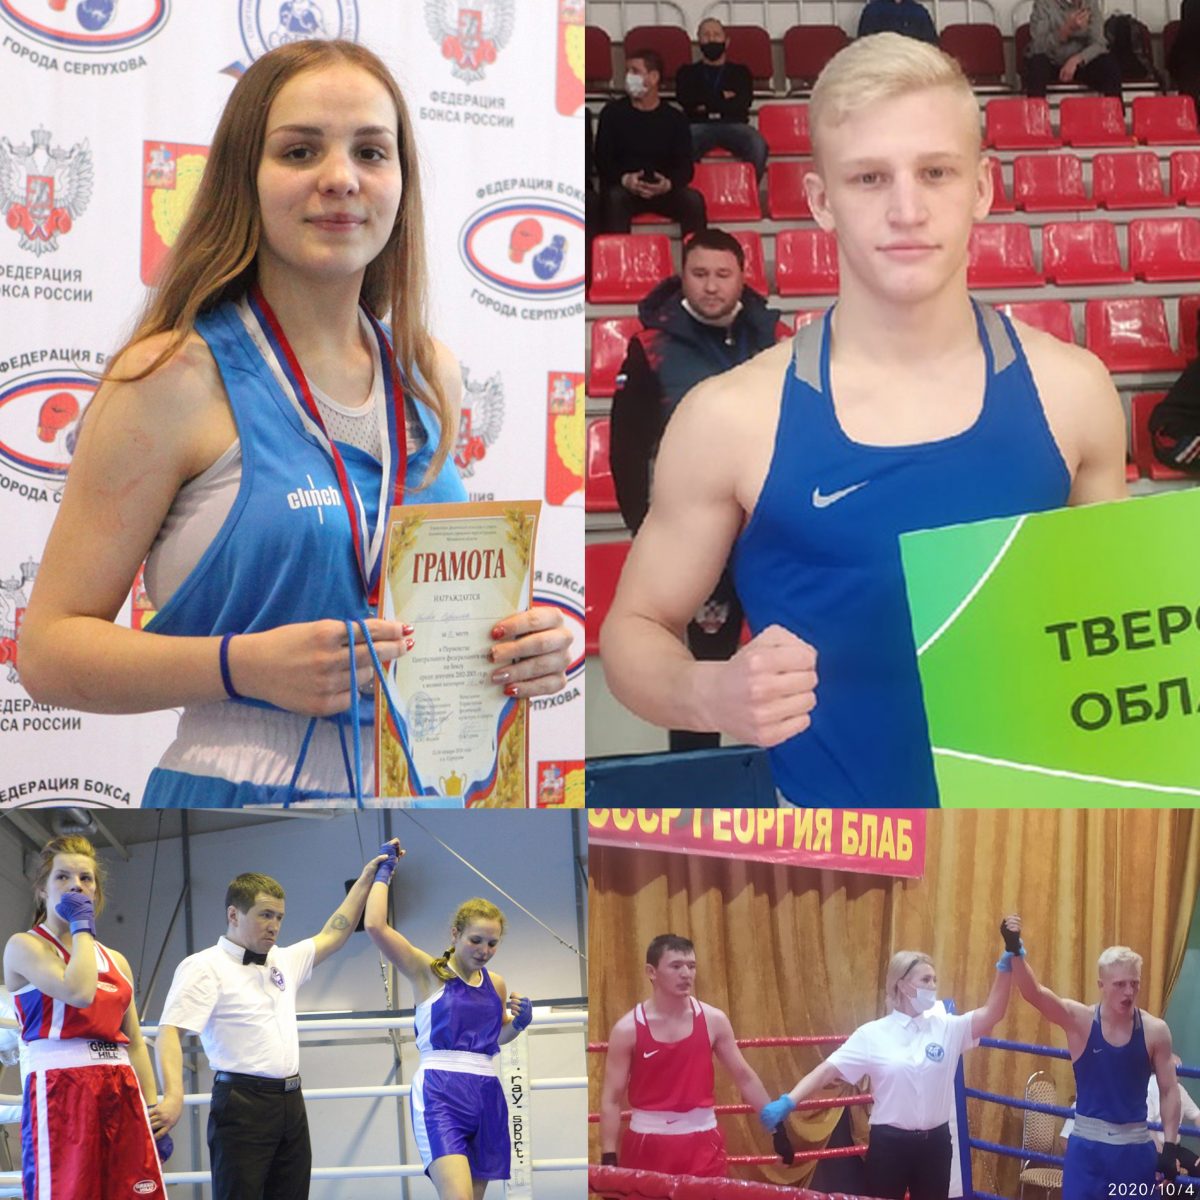 Их объединил ринг: в Тверской области известные боксеры создали семью